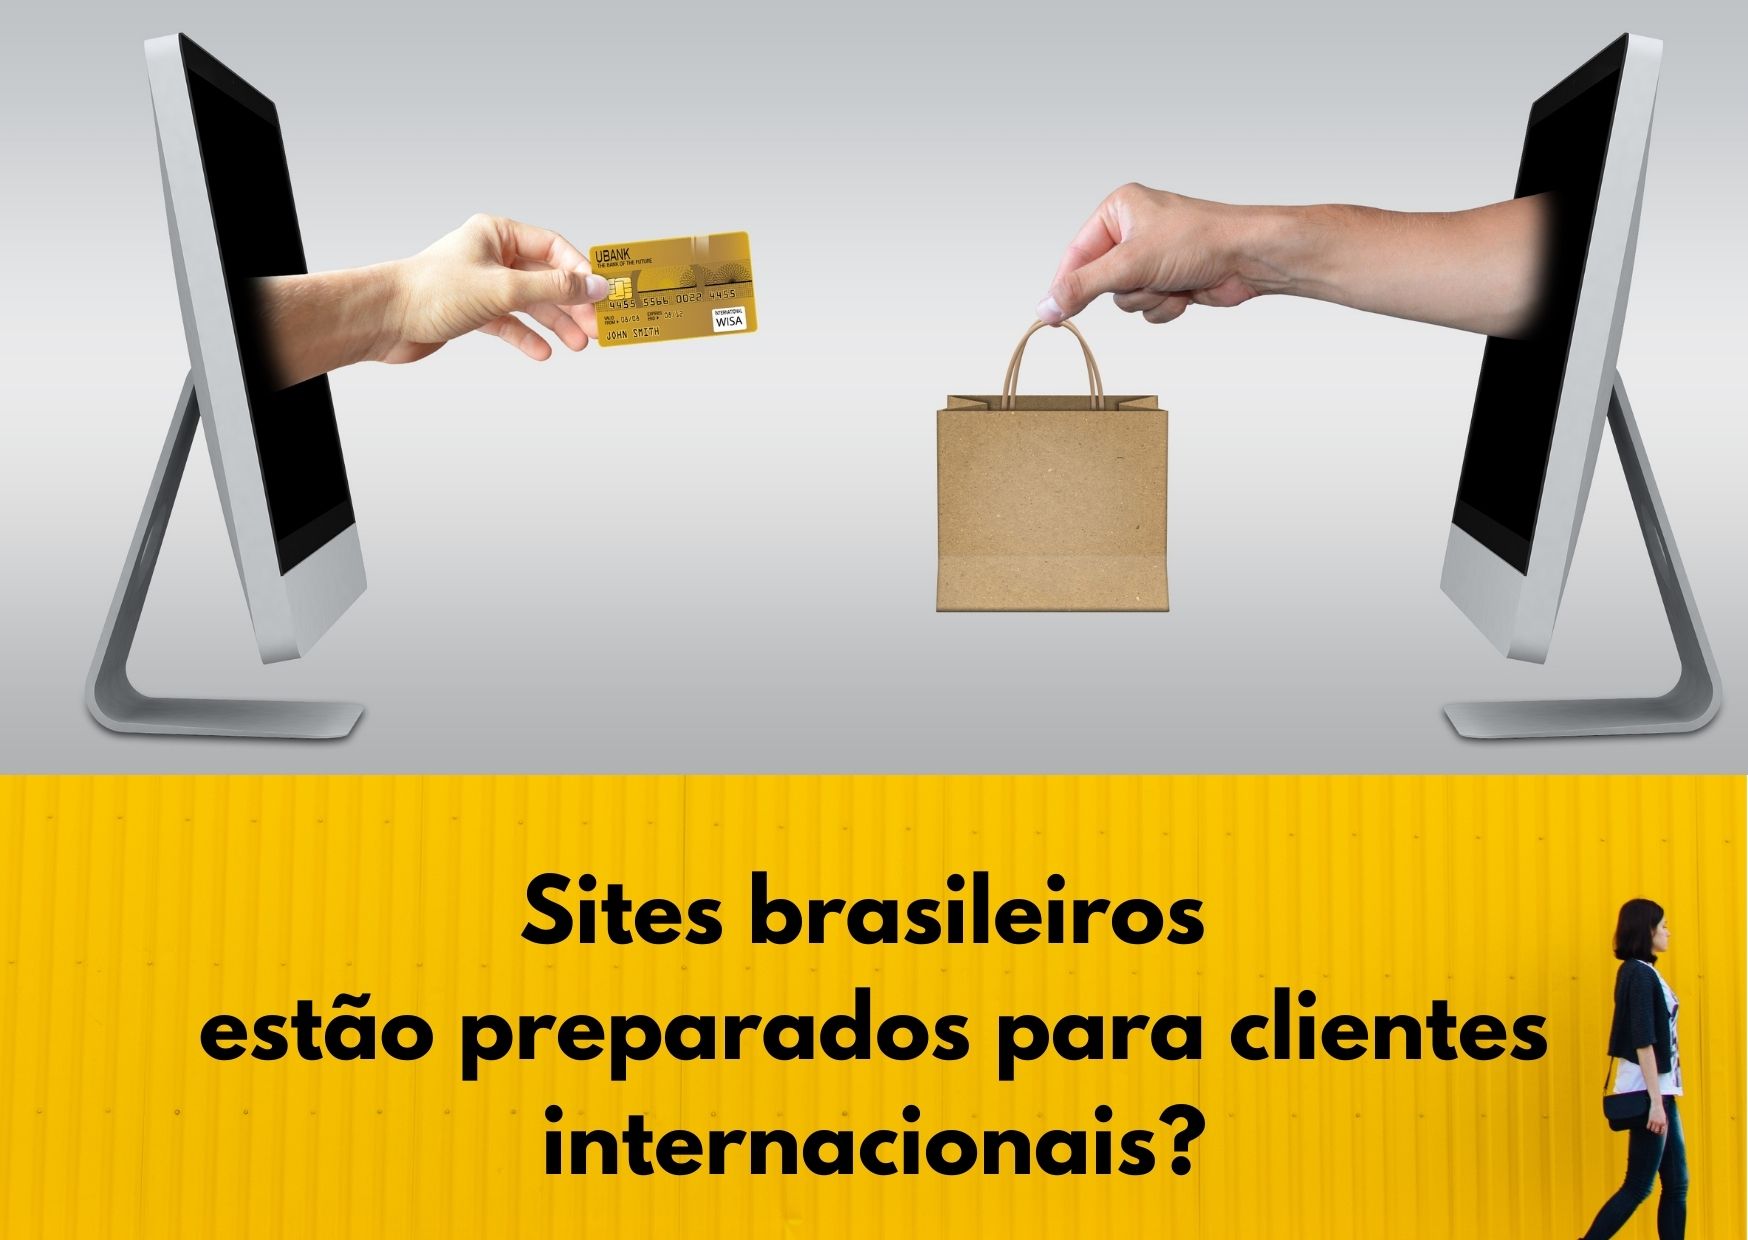 Sites brasileiros estão preparados para clientes internacionais?